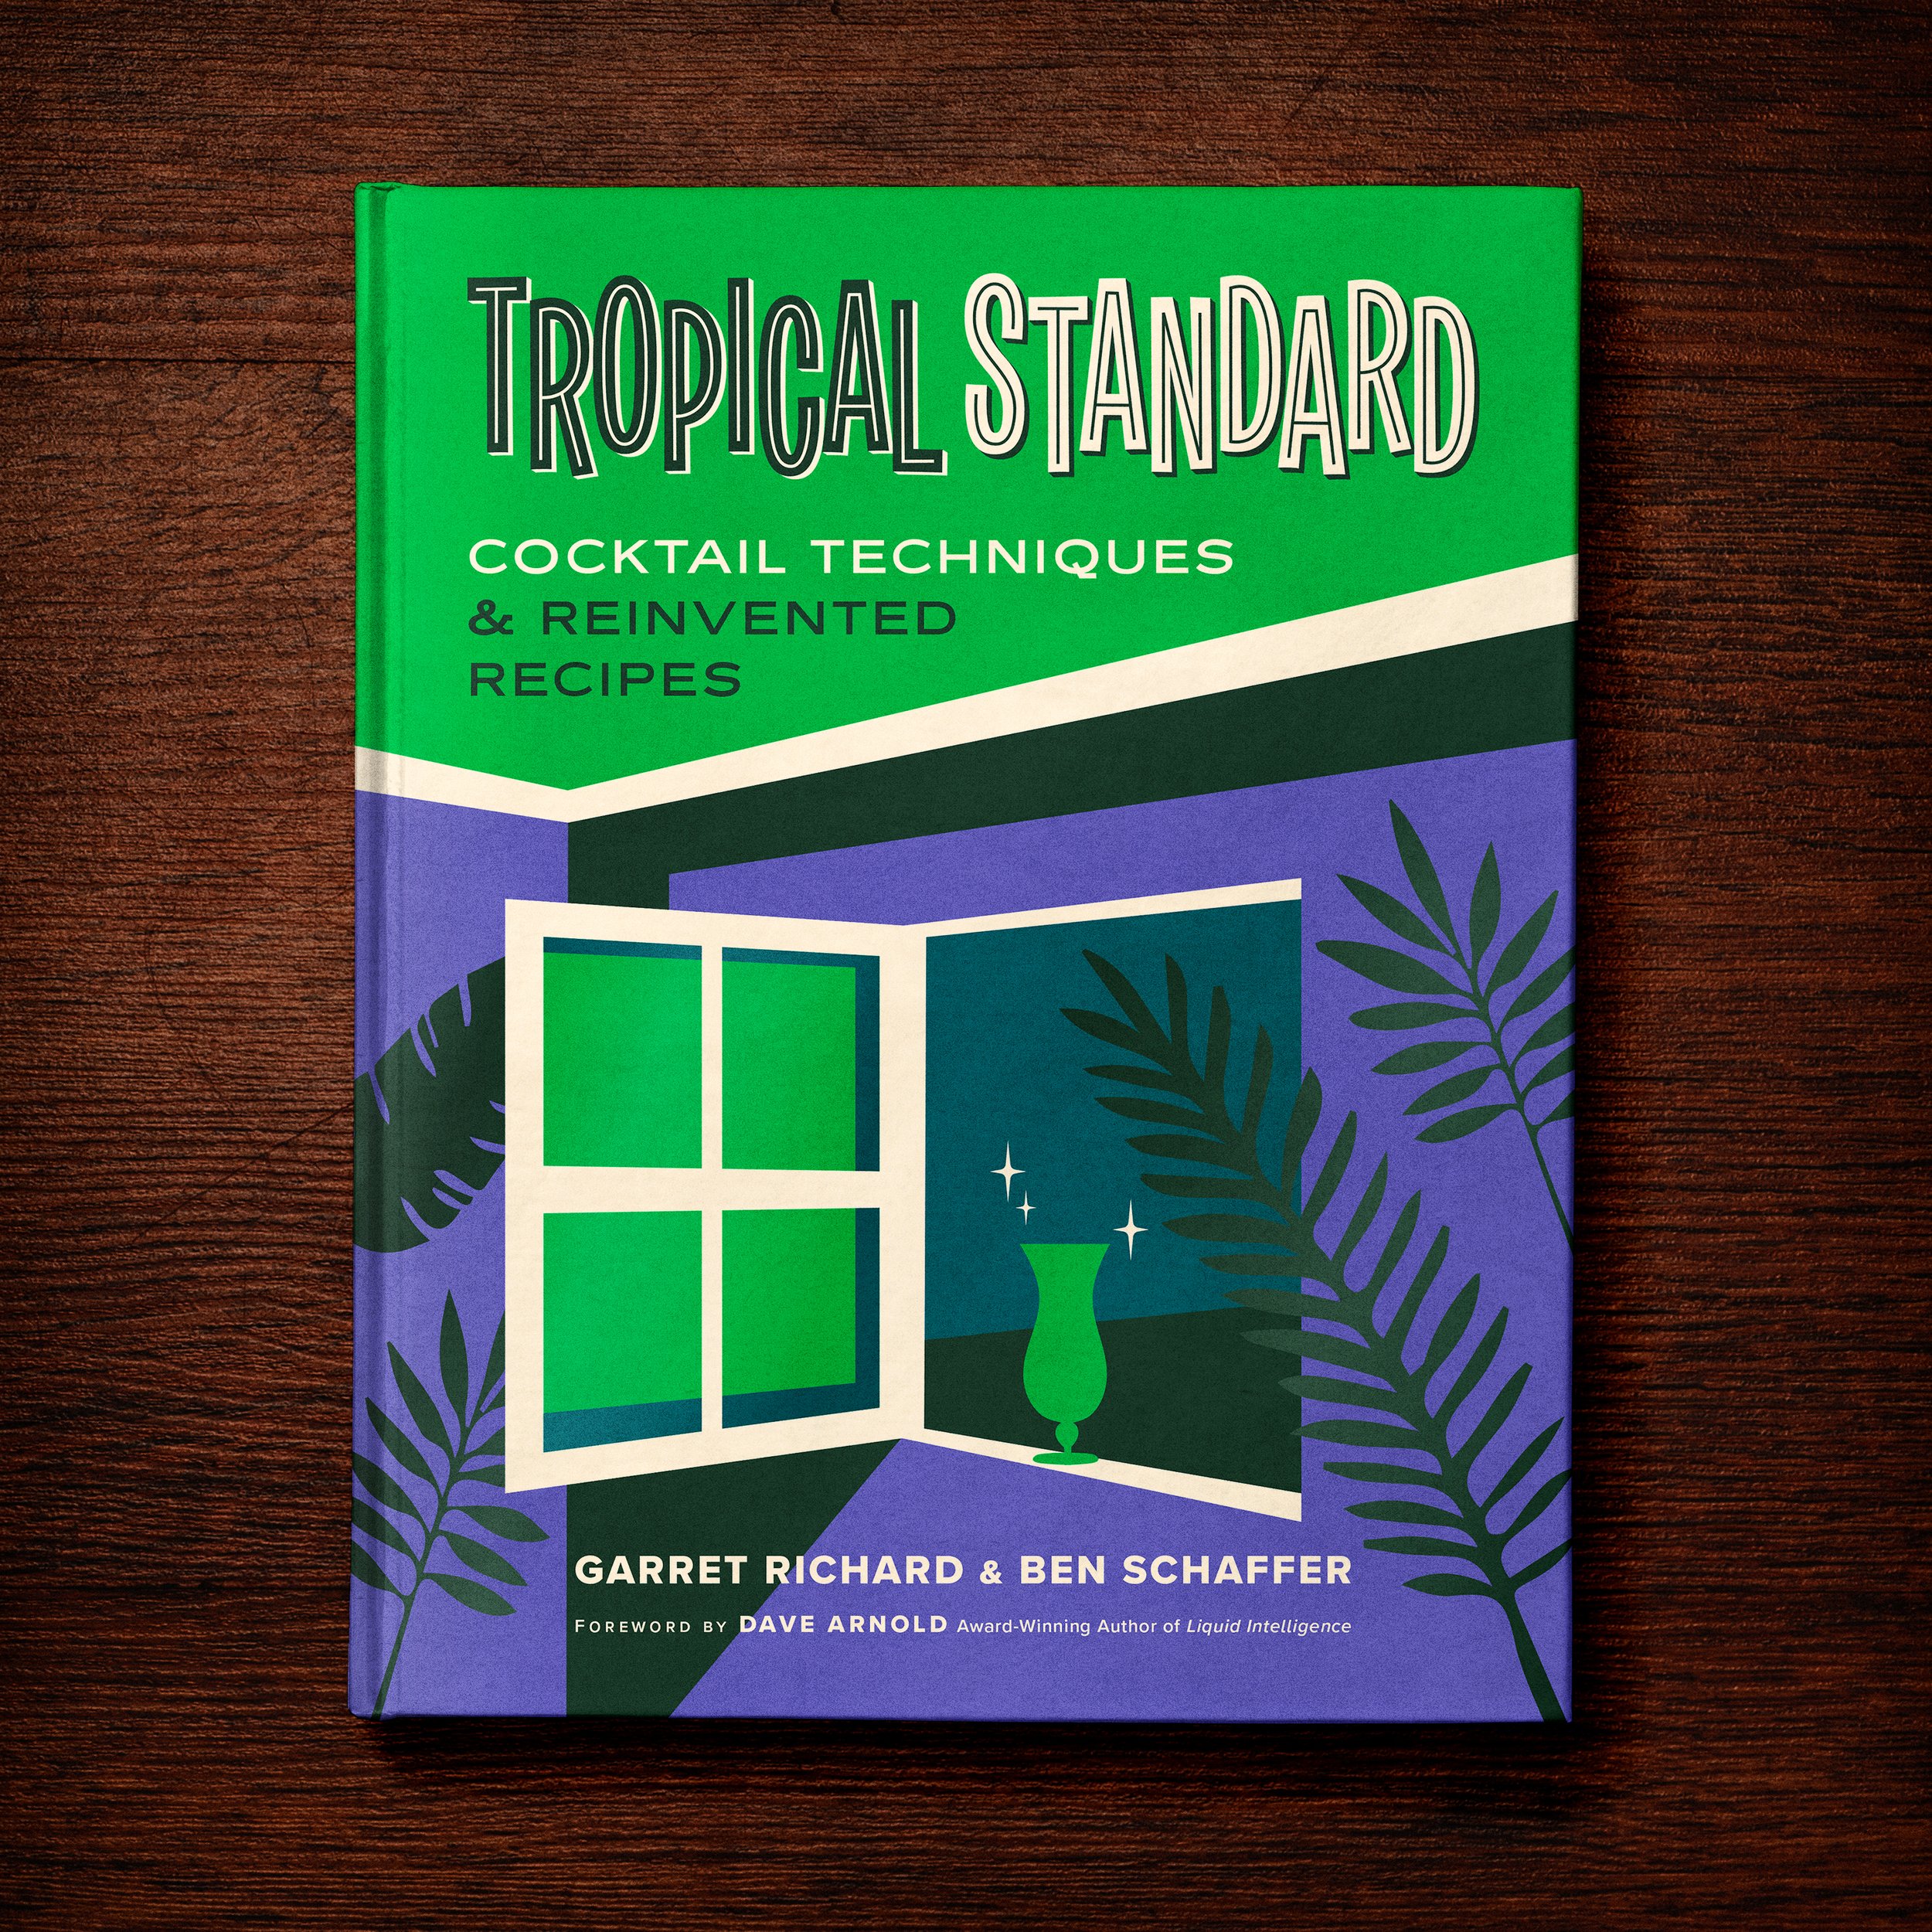 TropicalStandard_Cover_Comp_5.13.jpg